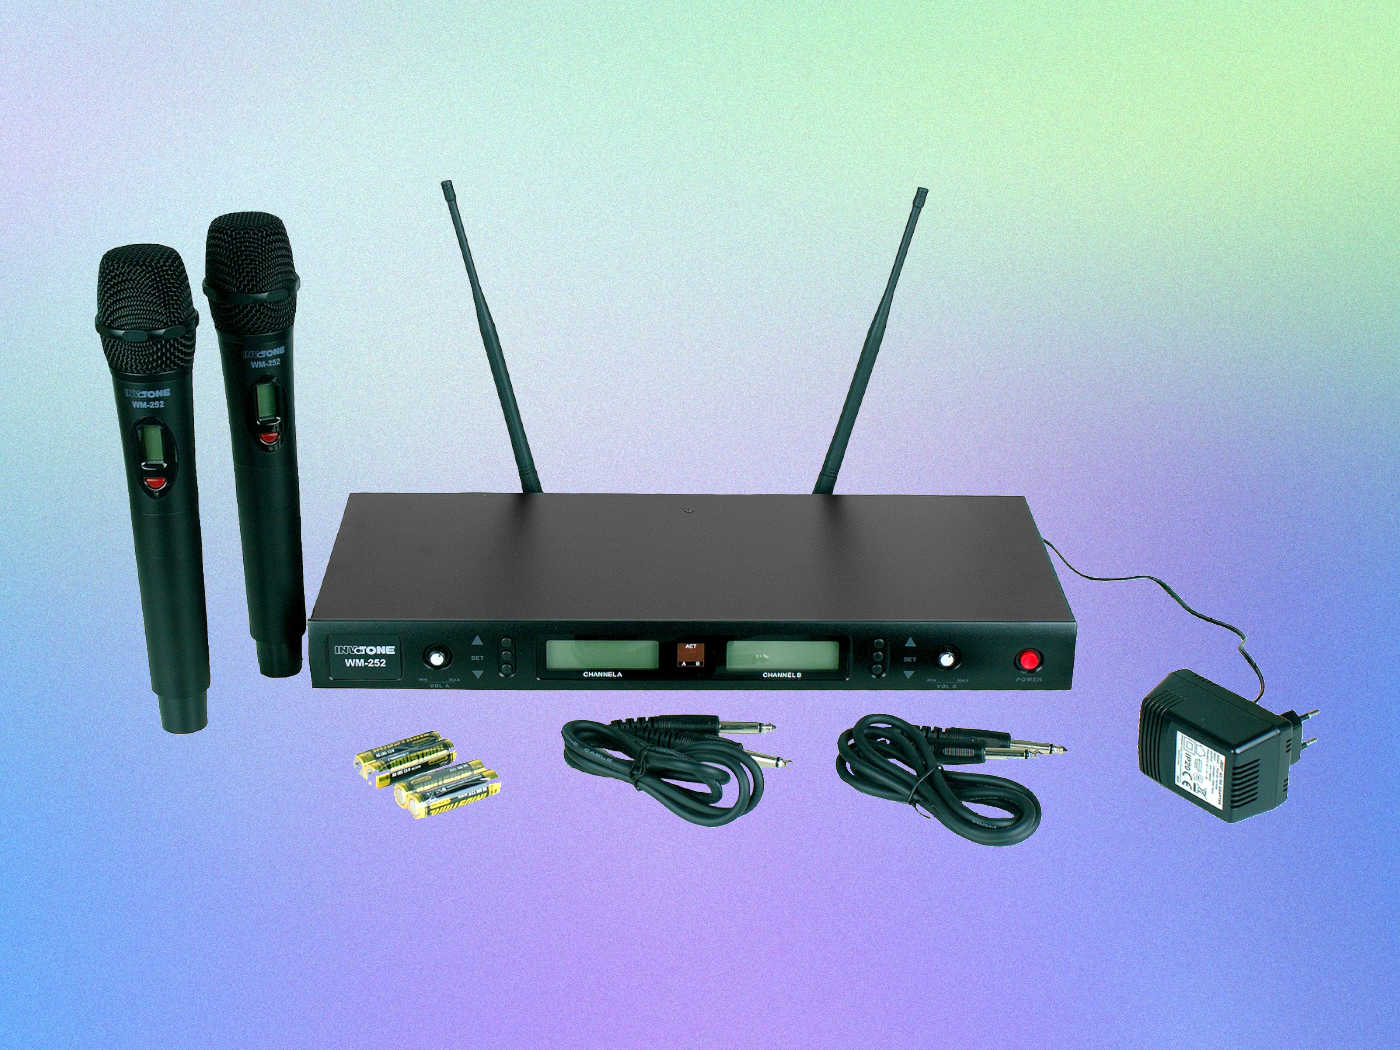 Беспроводная радиосистема с двумя микрофонами от INVOTONE новая модель WM-252